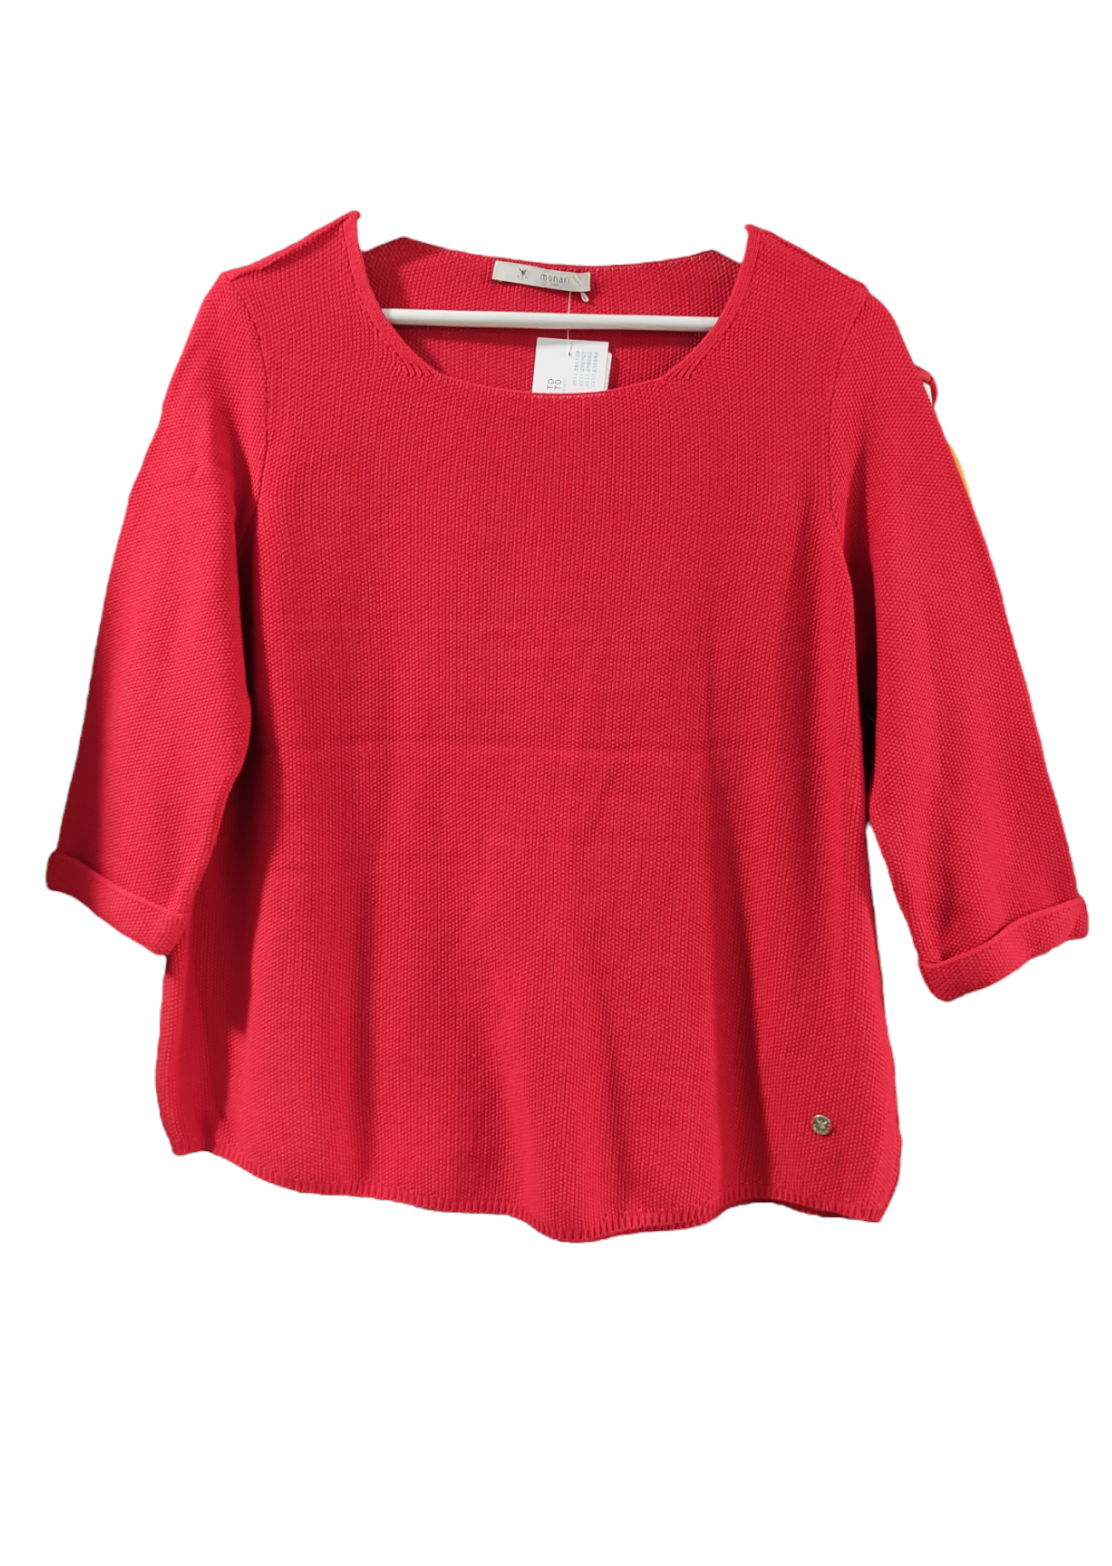 Πλεκτή Γυναικεία Μπλούζα MONARI σε Κόκκινο χρώμα (Medium)